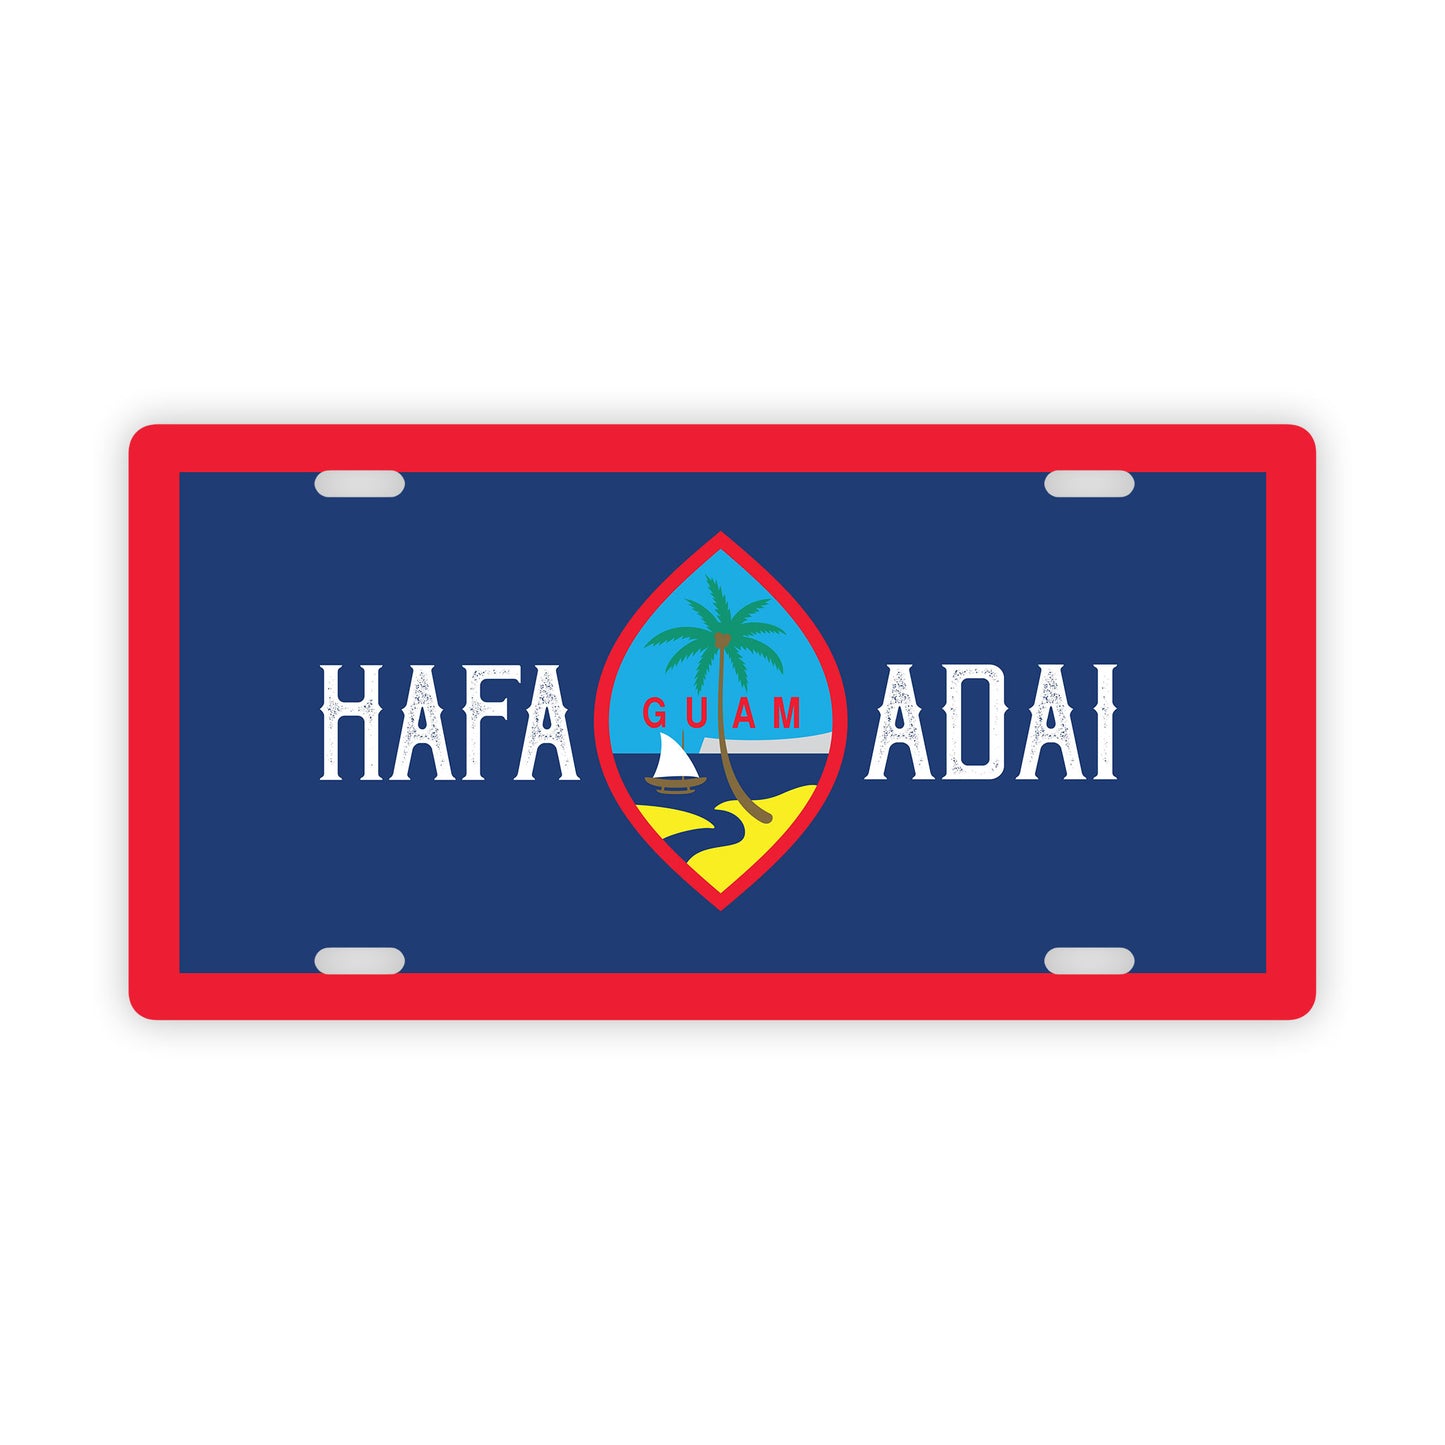 Hafa Adai Guam Flag Car License Plate